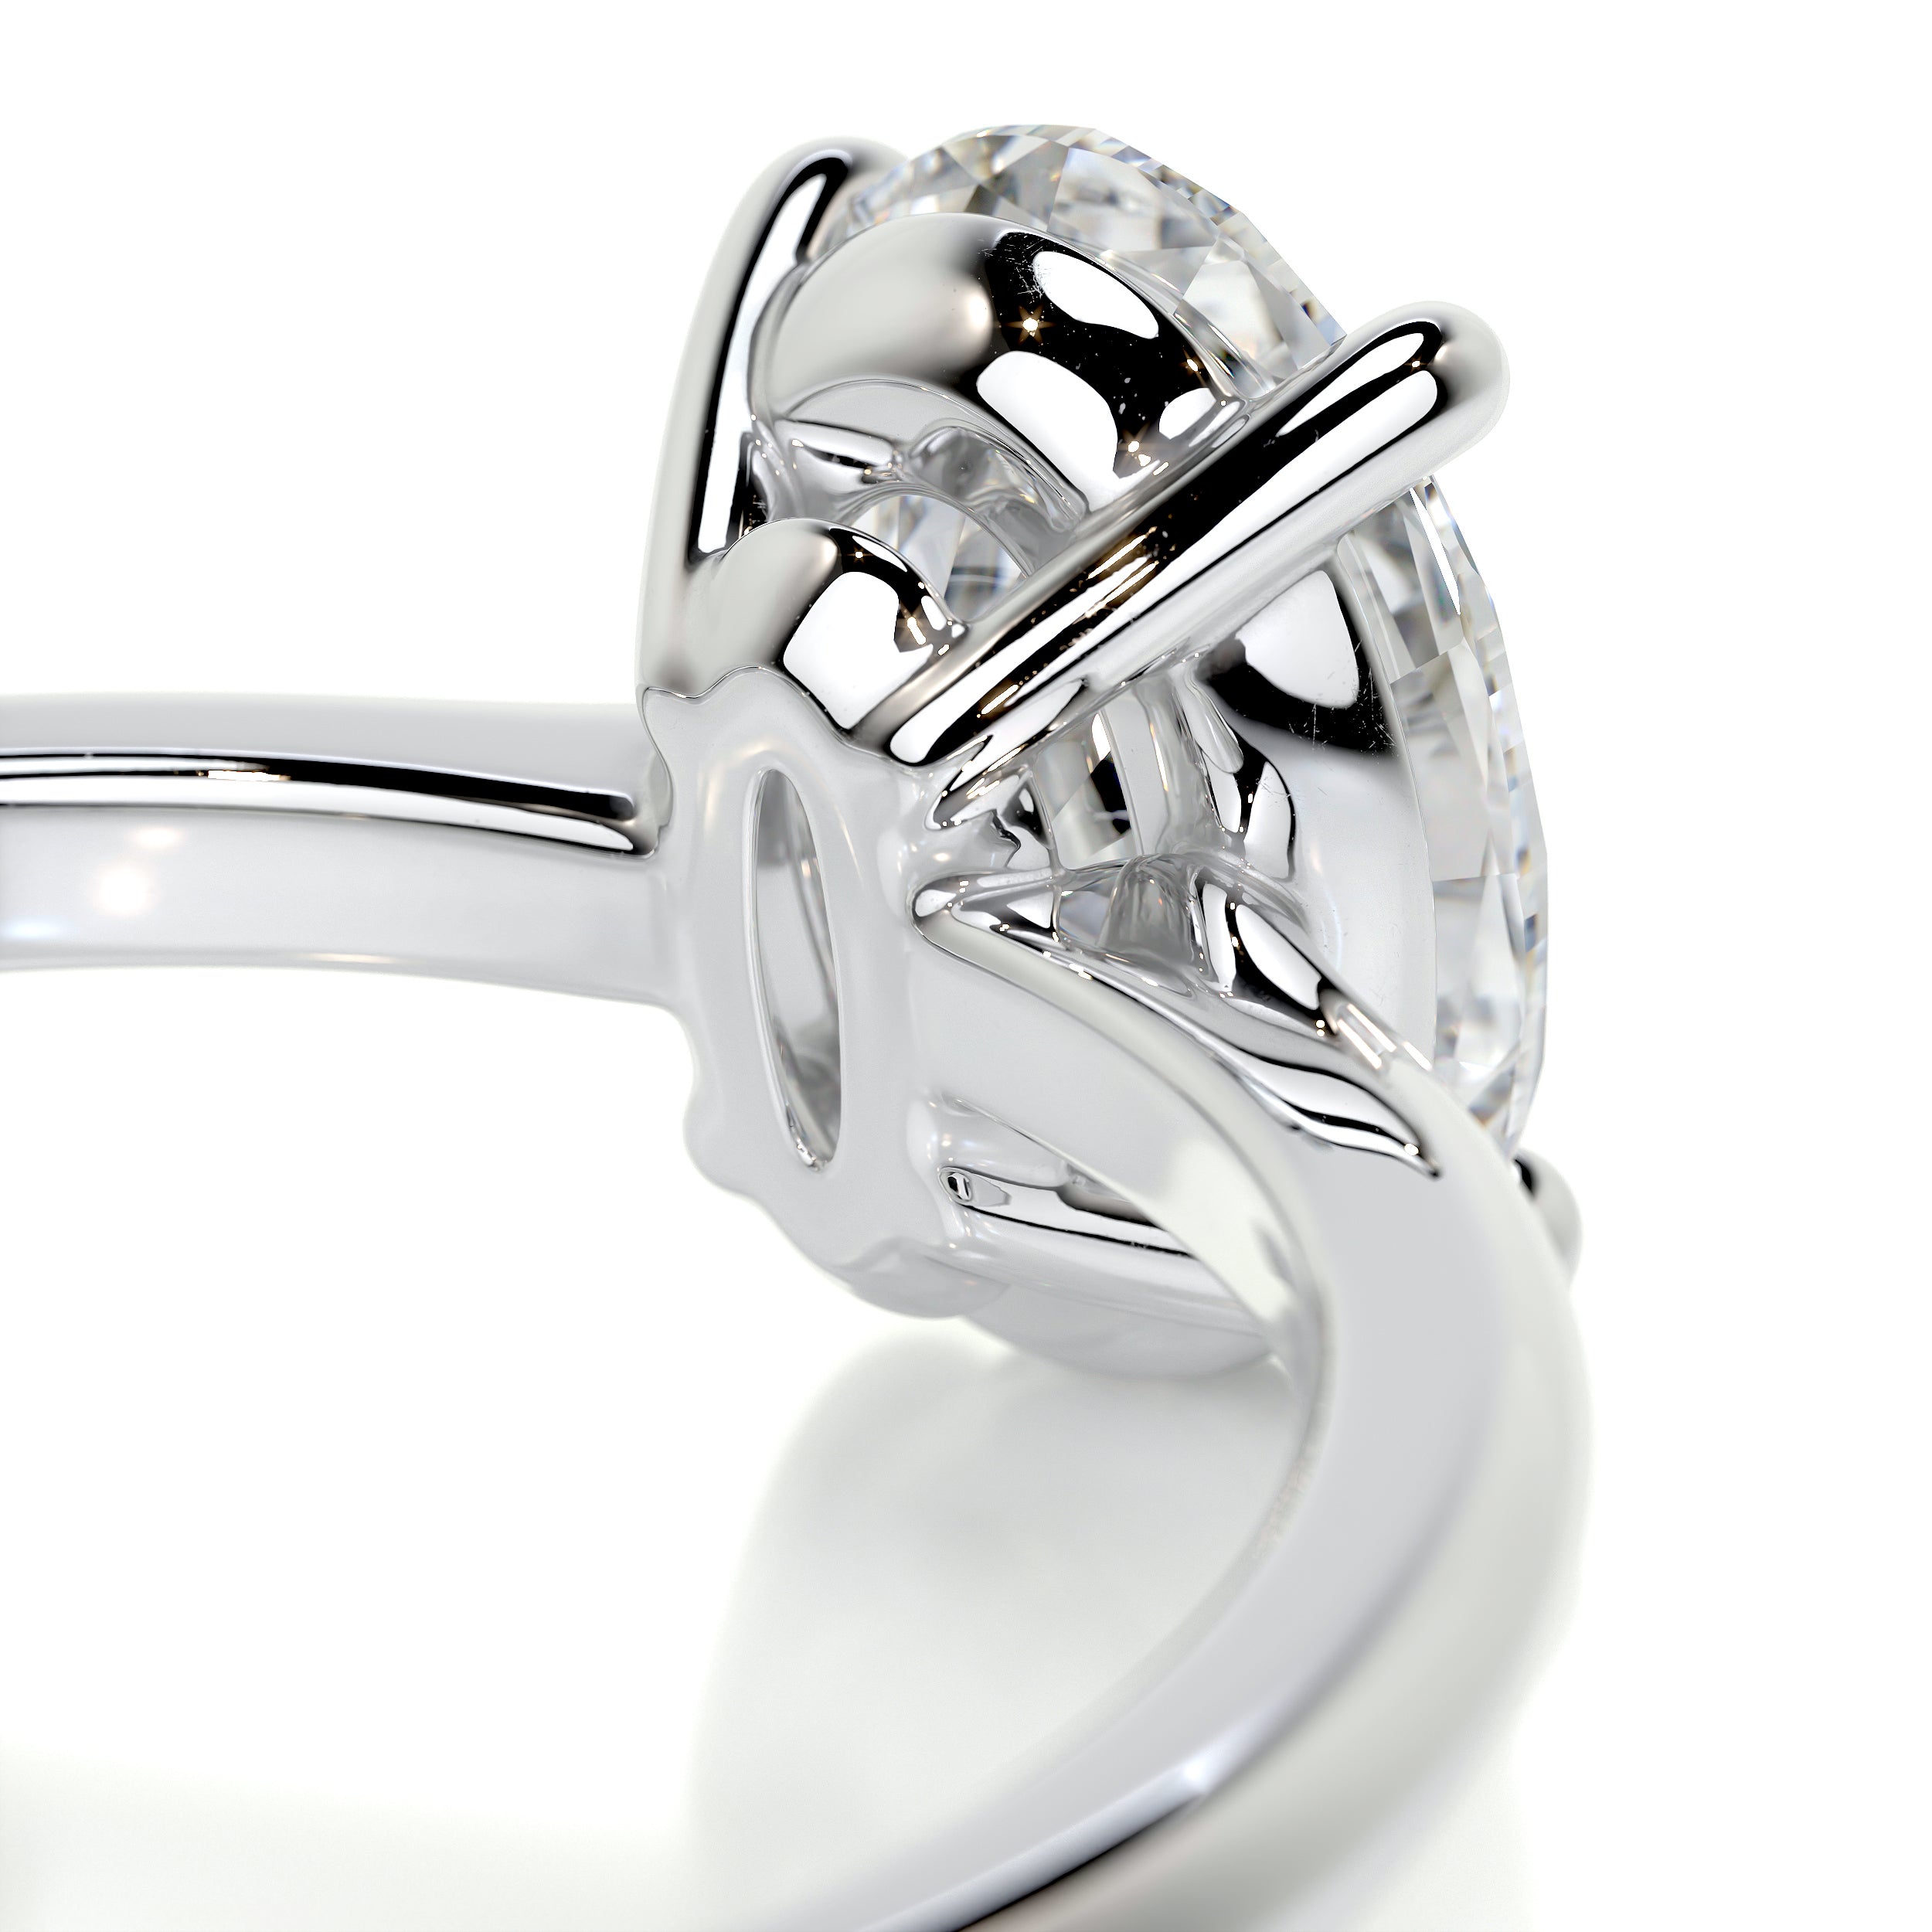 Julia Diamond Engagement Ring   (1 Carat) -14K White Gold